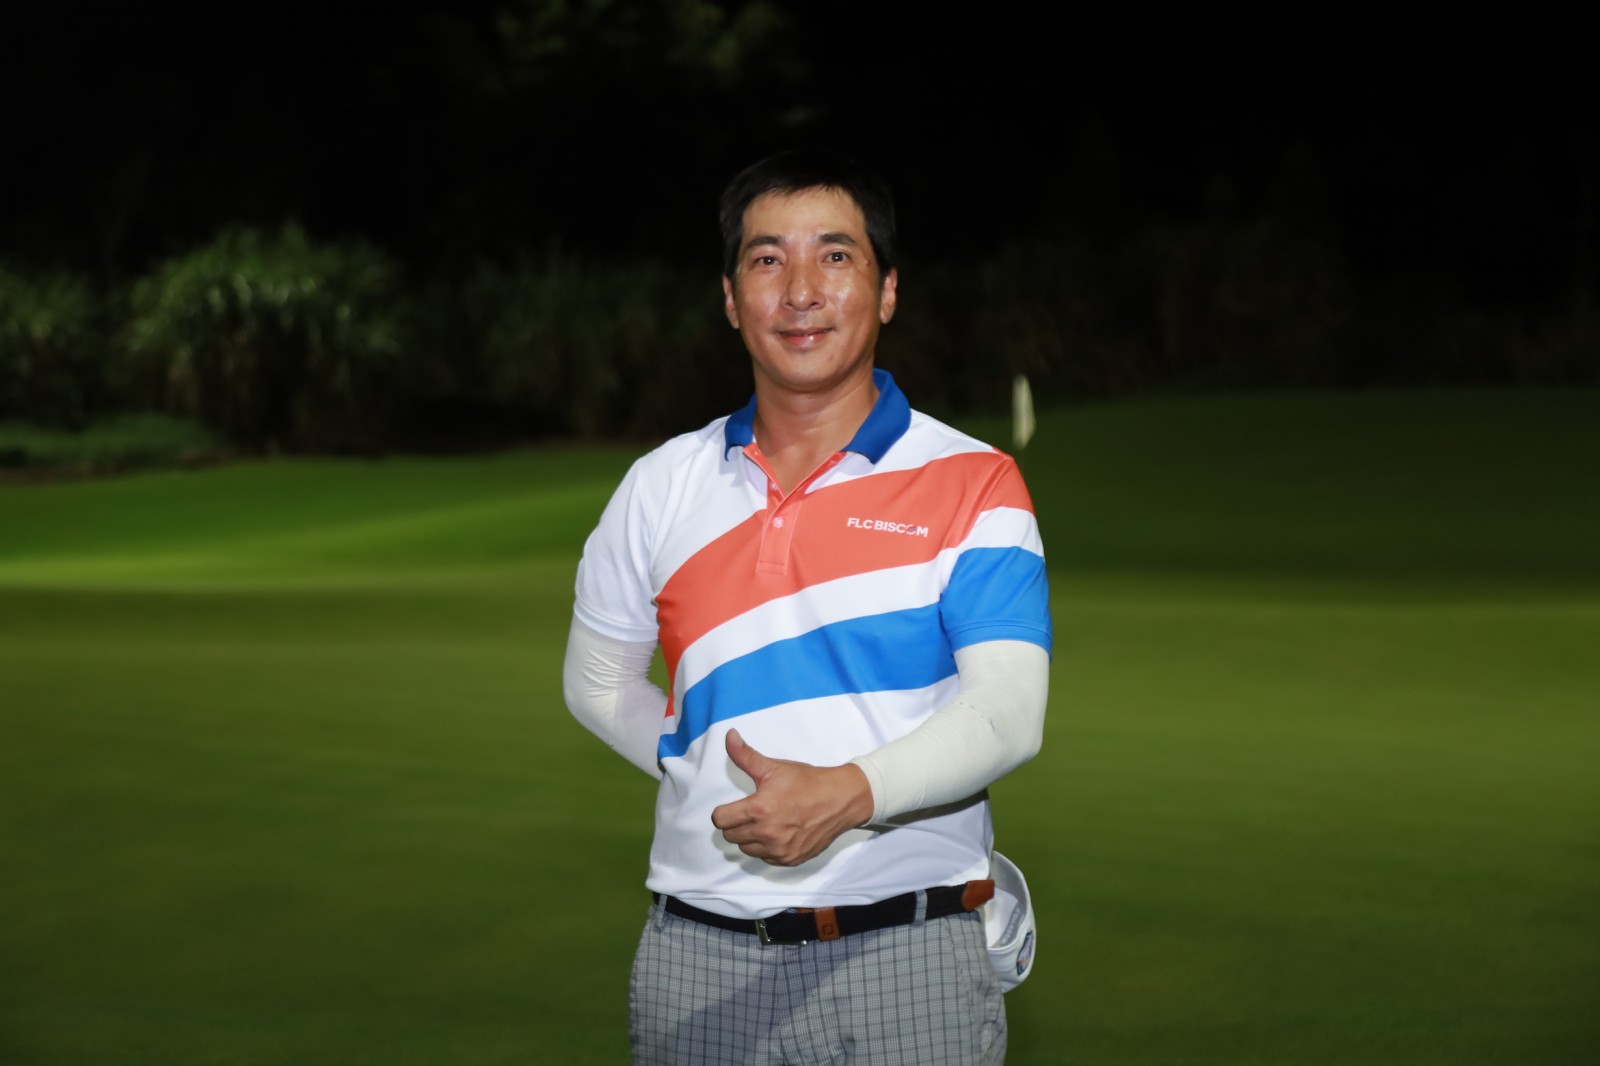 Ghi HIO tại FLC Golf Club Hạ Long, golfer Nguyễn Vương Hùng nhận 100 triệu từ gói bảo hiểm của VGS Sport.